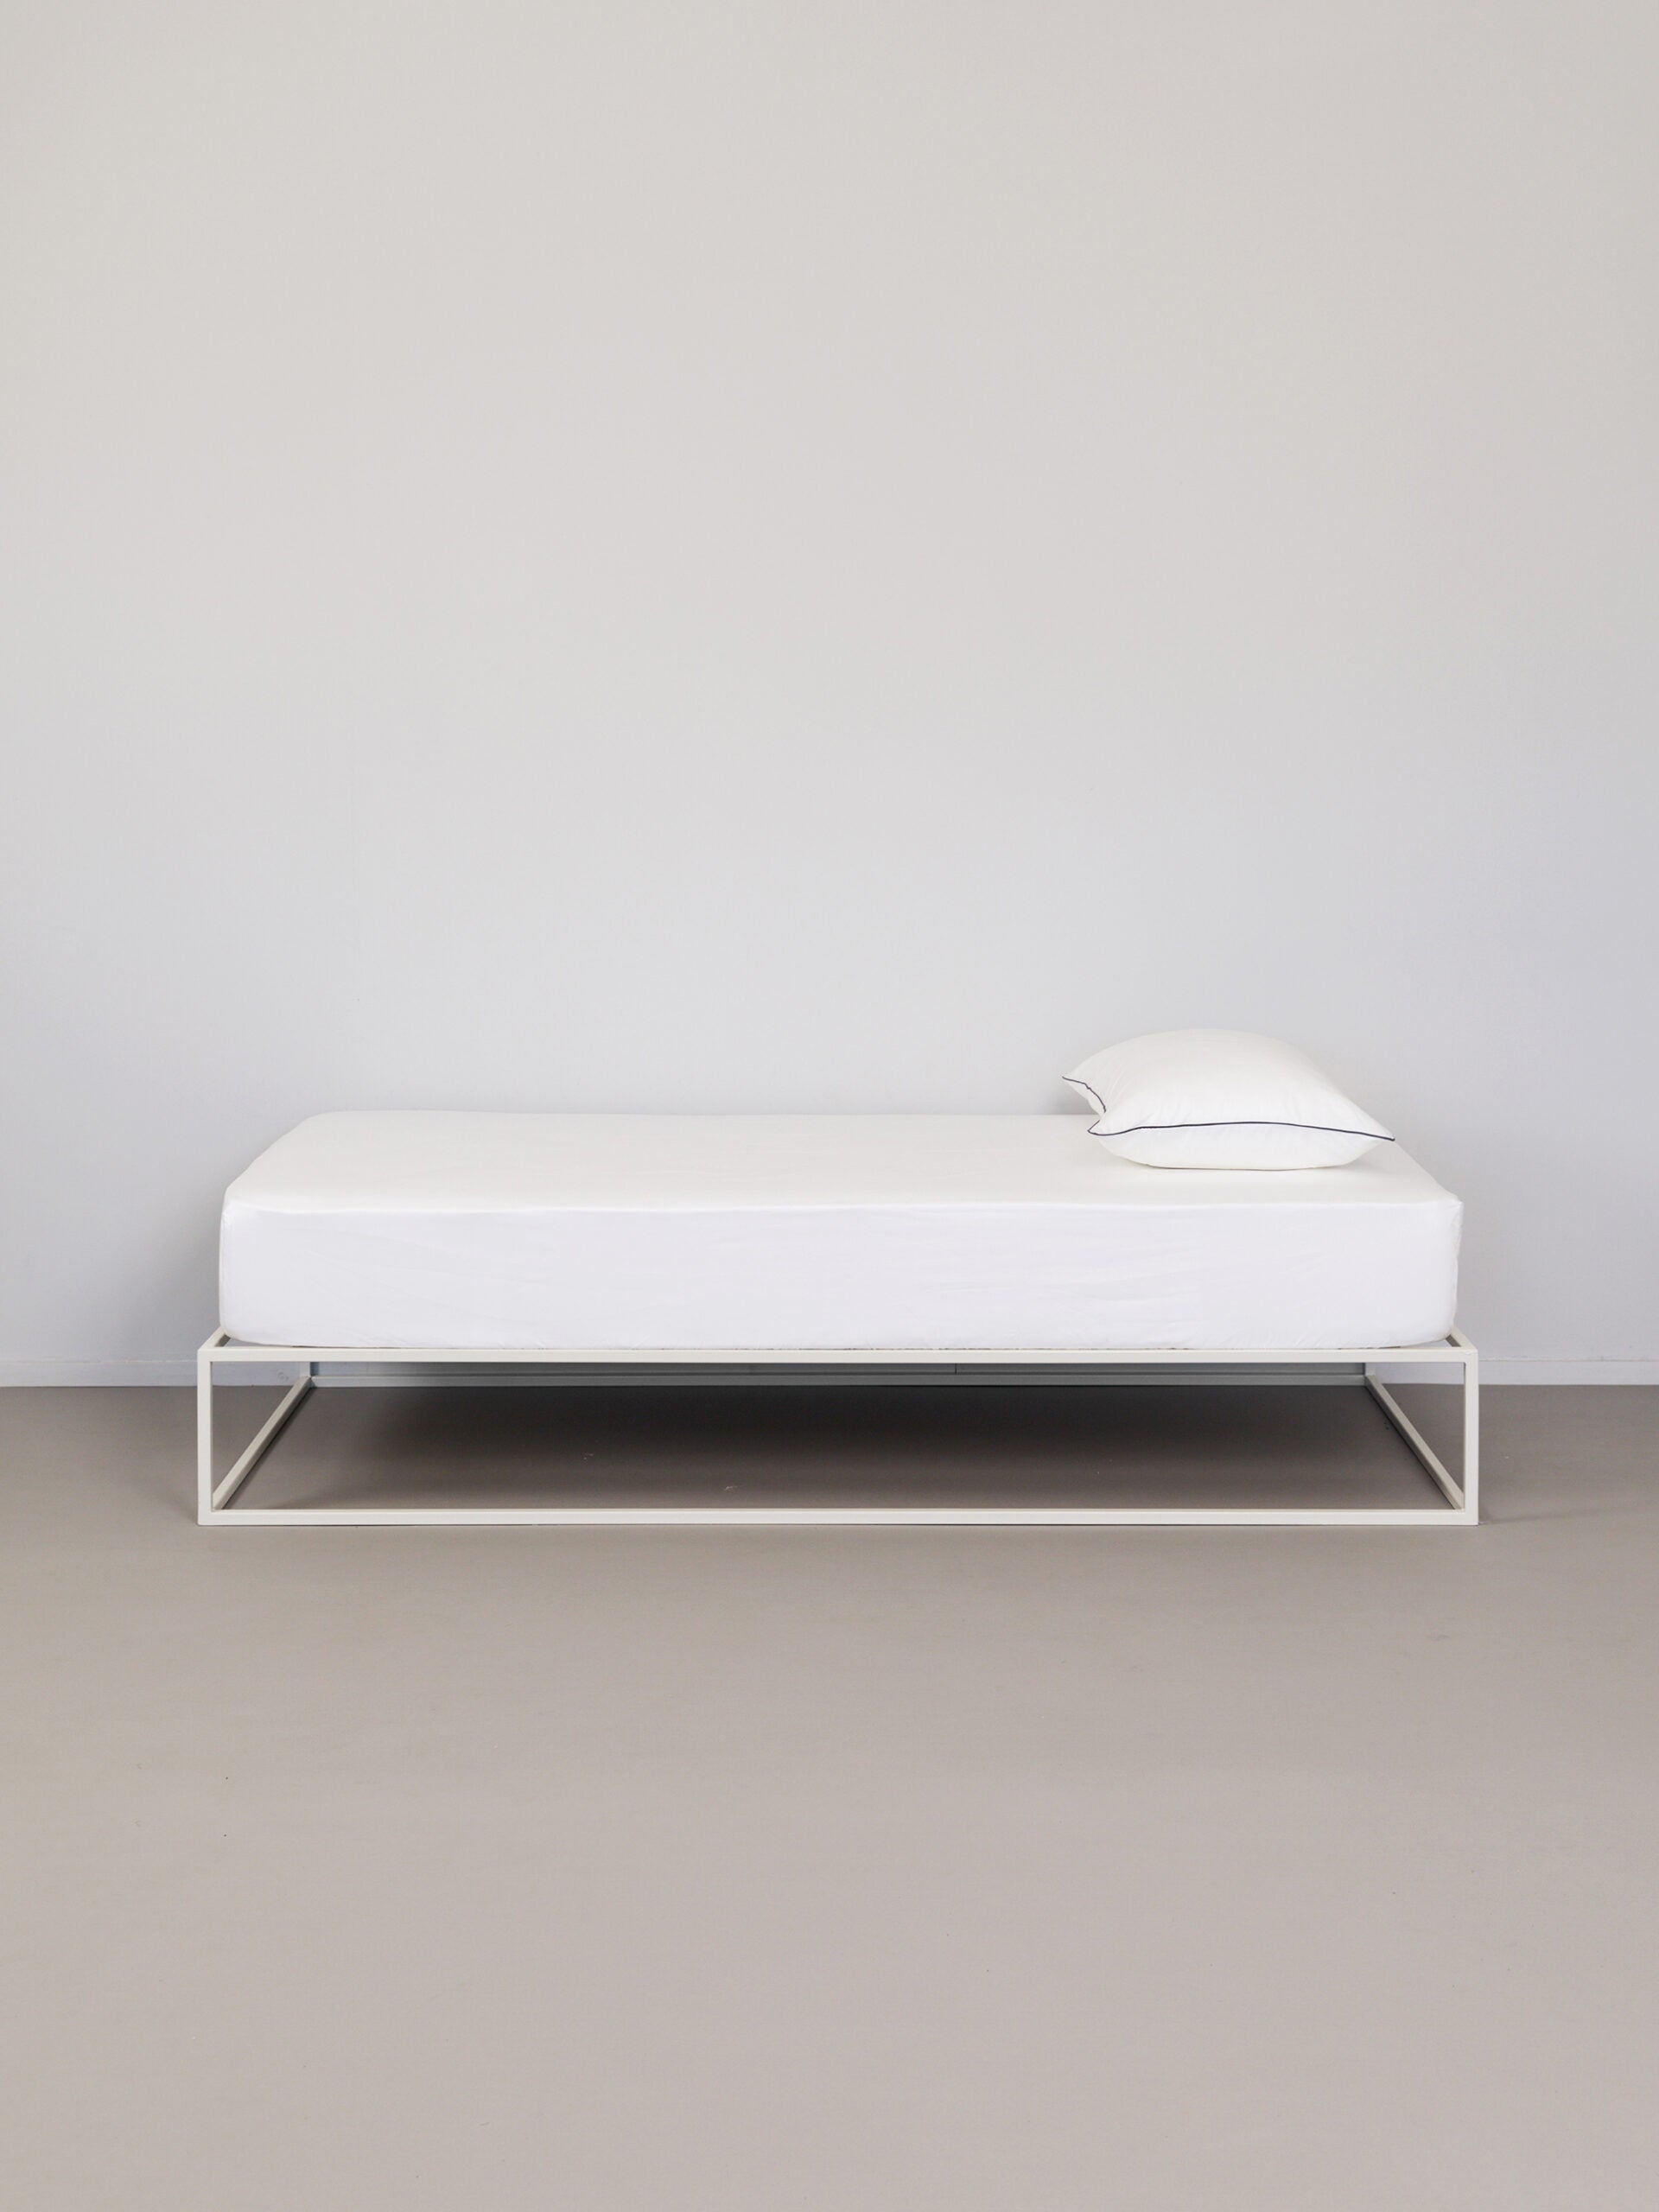 מיטת ברזל לבנה עם סדין לבן וכרית עם ציפית לכרית לבנה עם פס שחור בצדדיו בחדר אפור בהיר בוהק